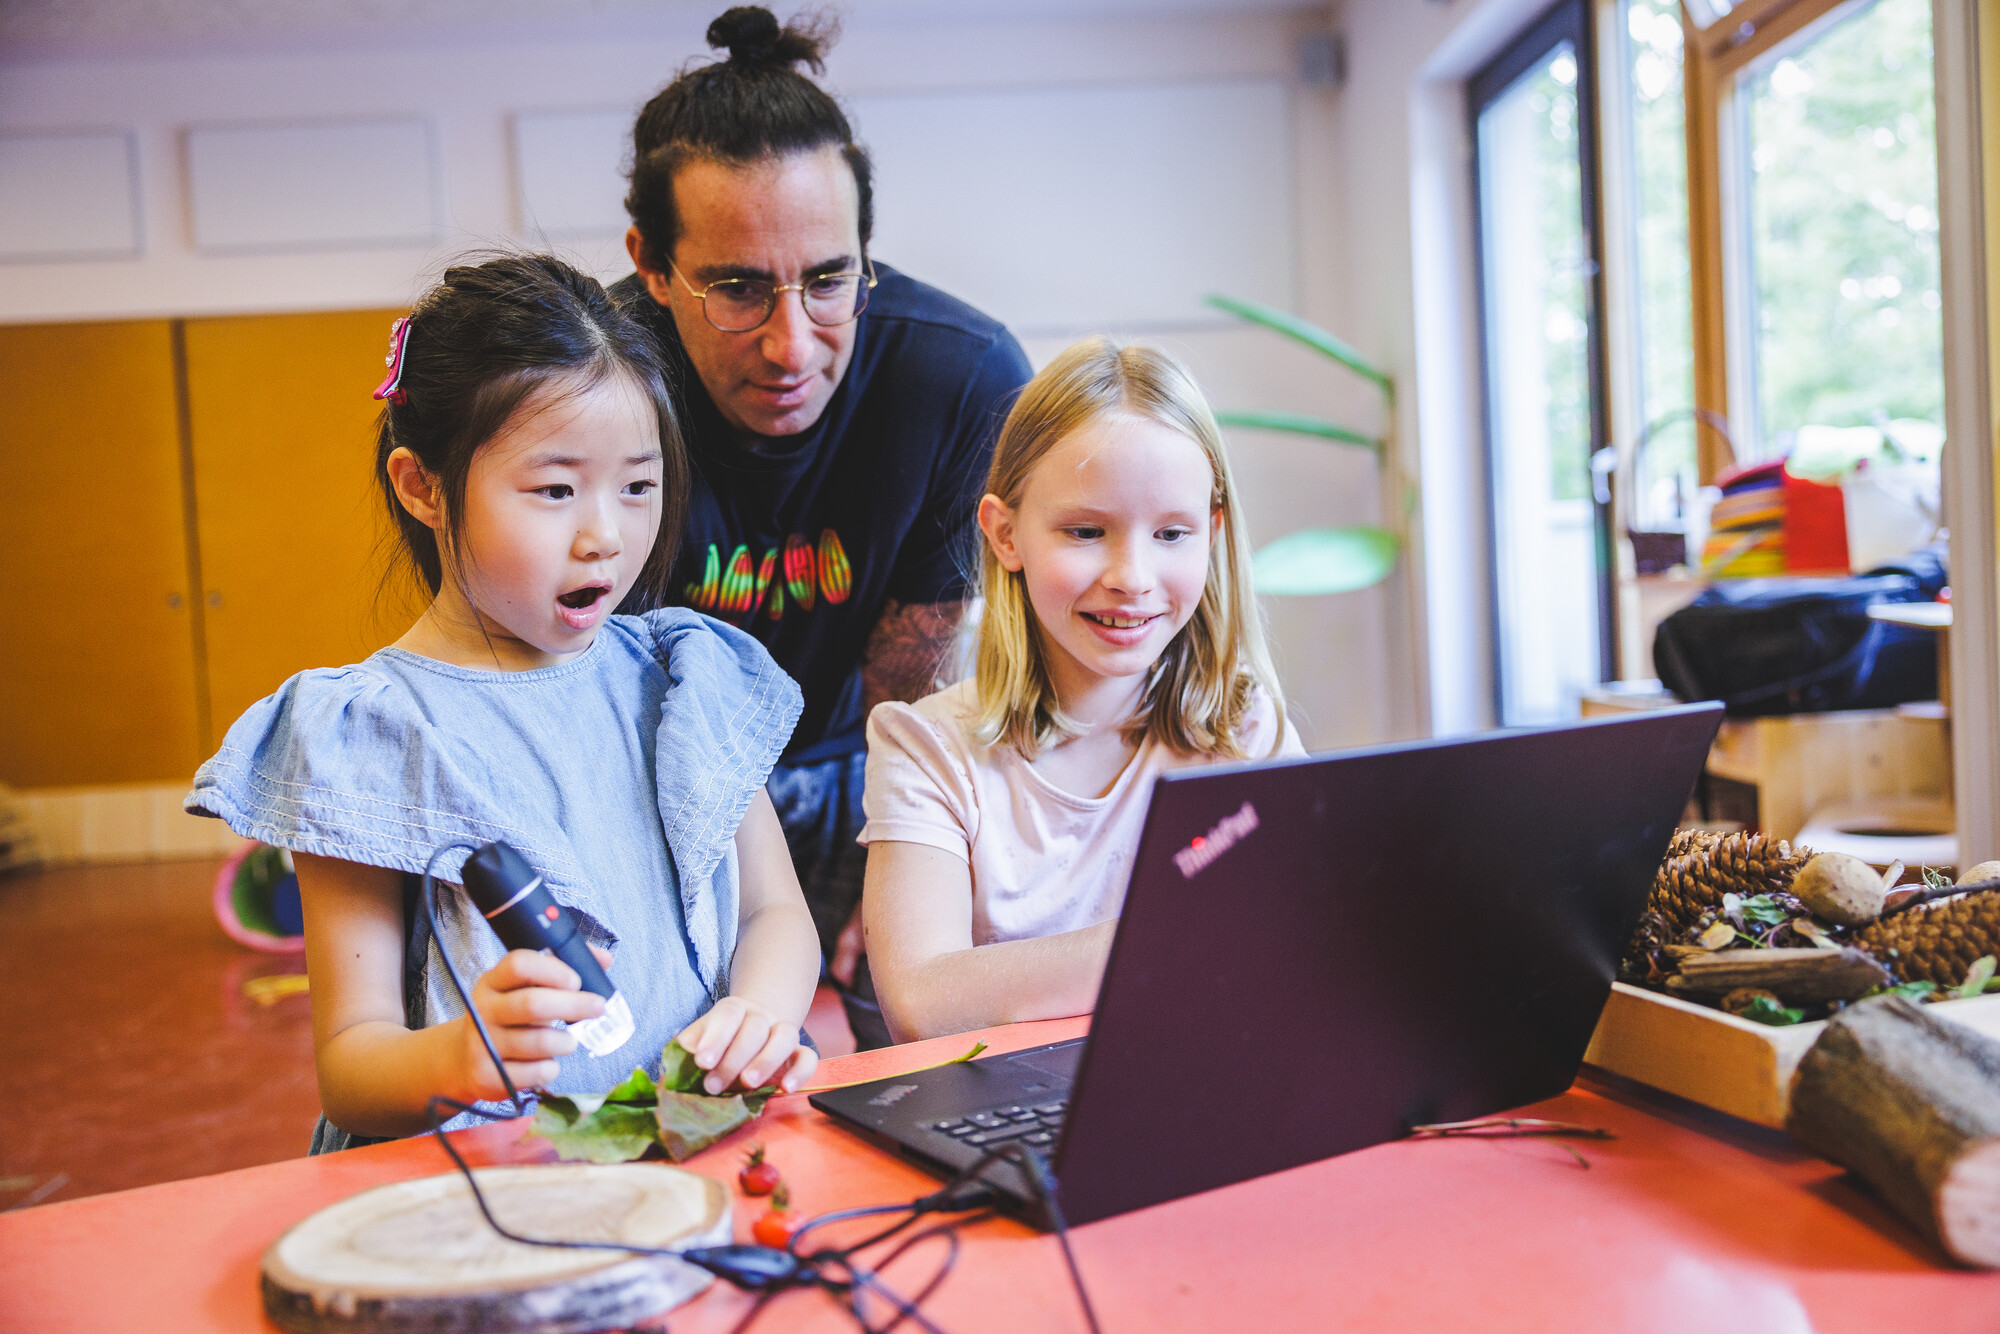 Ein Mädchen untersucht mit einem digitalen Mikroskop ein Blatt und sieht das Ergebnis zusammen mit ihrem Lehrer und einem weiteren Mädchen auf dem Laptop.